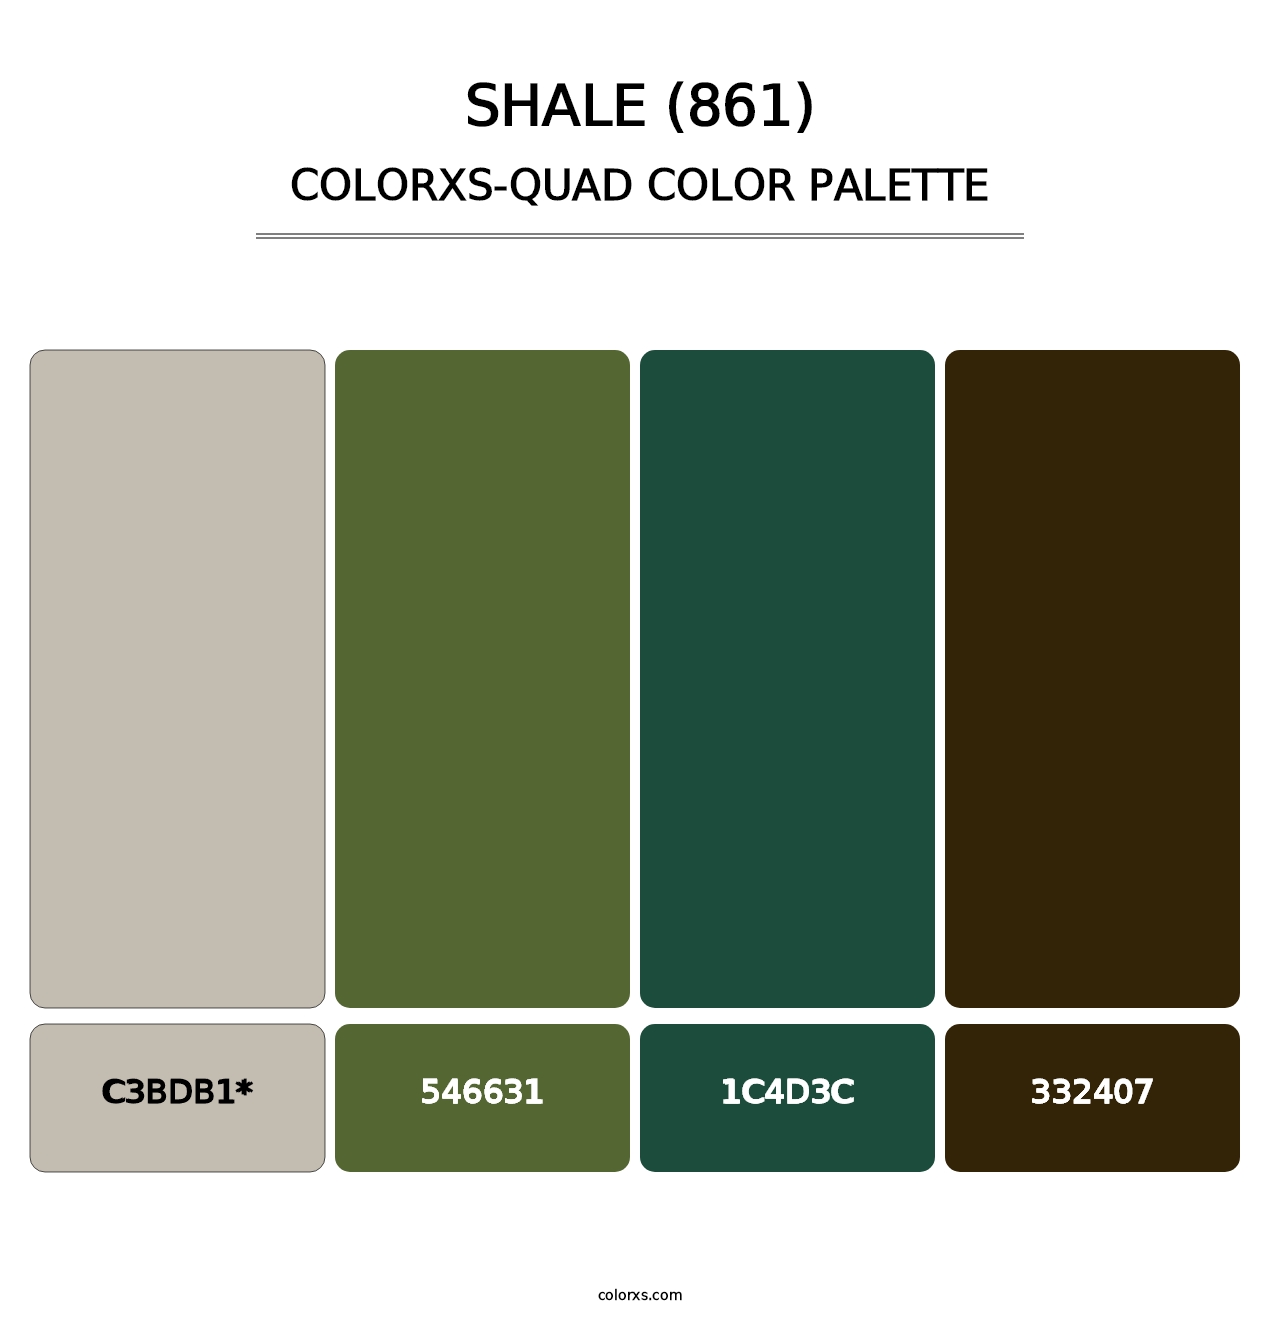 Shale (861) - Colorxs Quad Palette